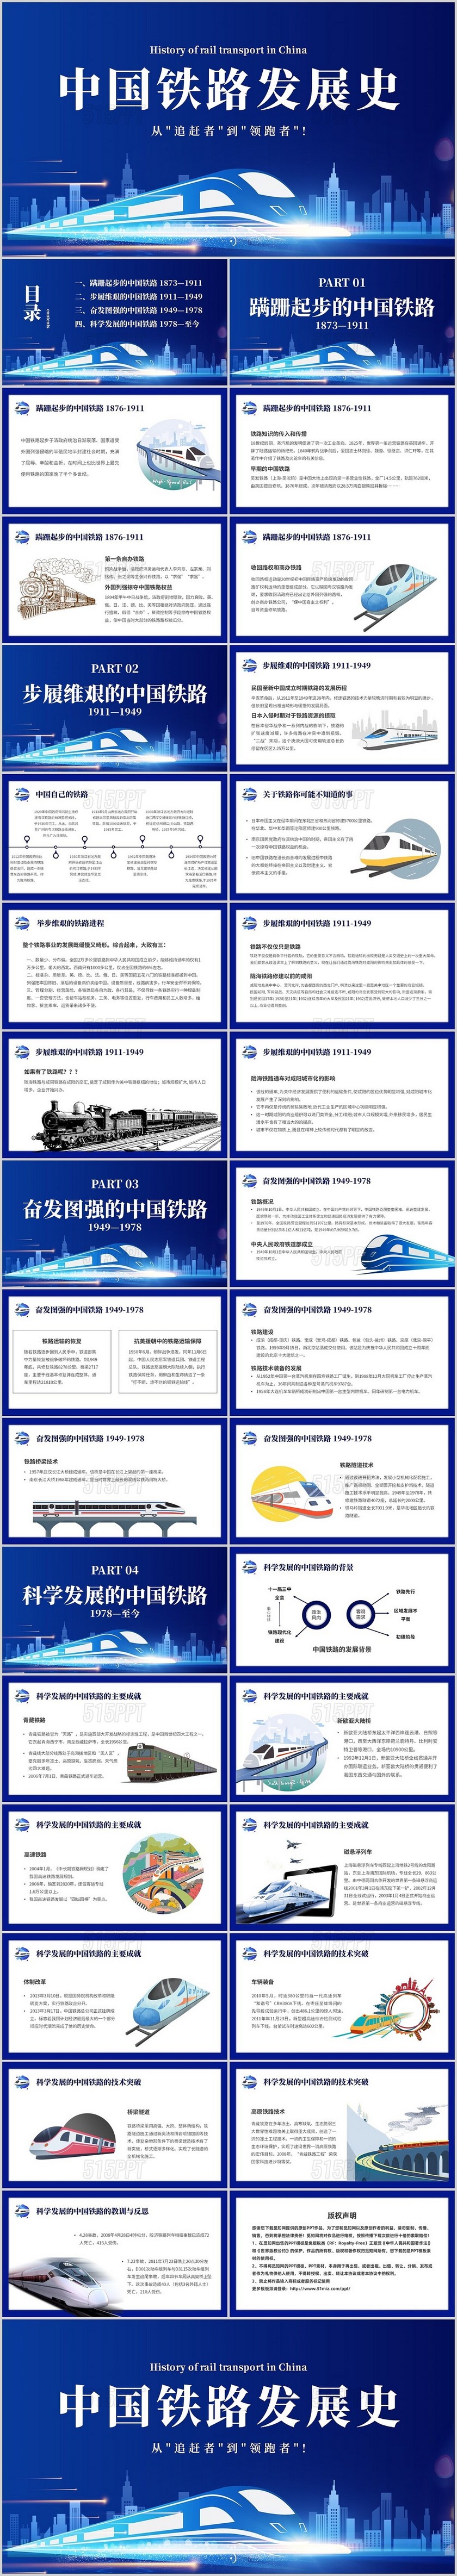 蓝色简约中国铁路发展史主题PPT模板